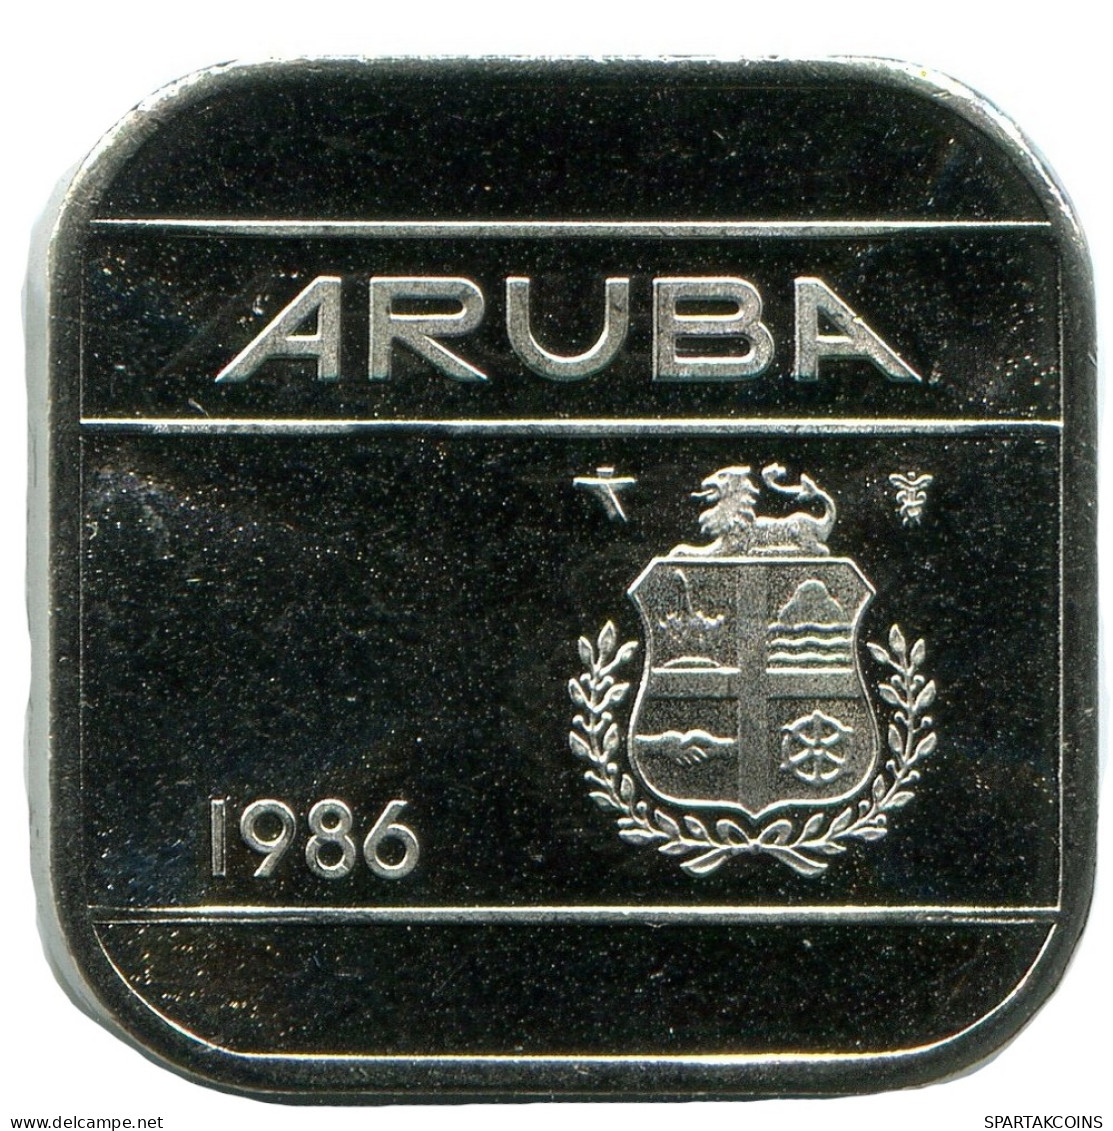 50 CENTS 1986 ARUBA Pièce (From BU Mint Set) #AH053.F - Aruba